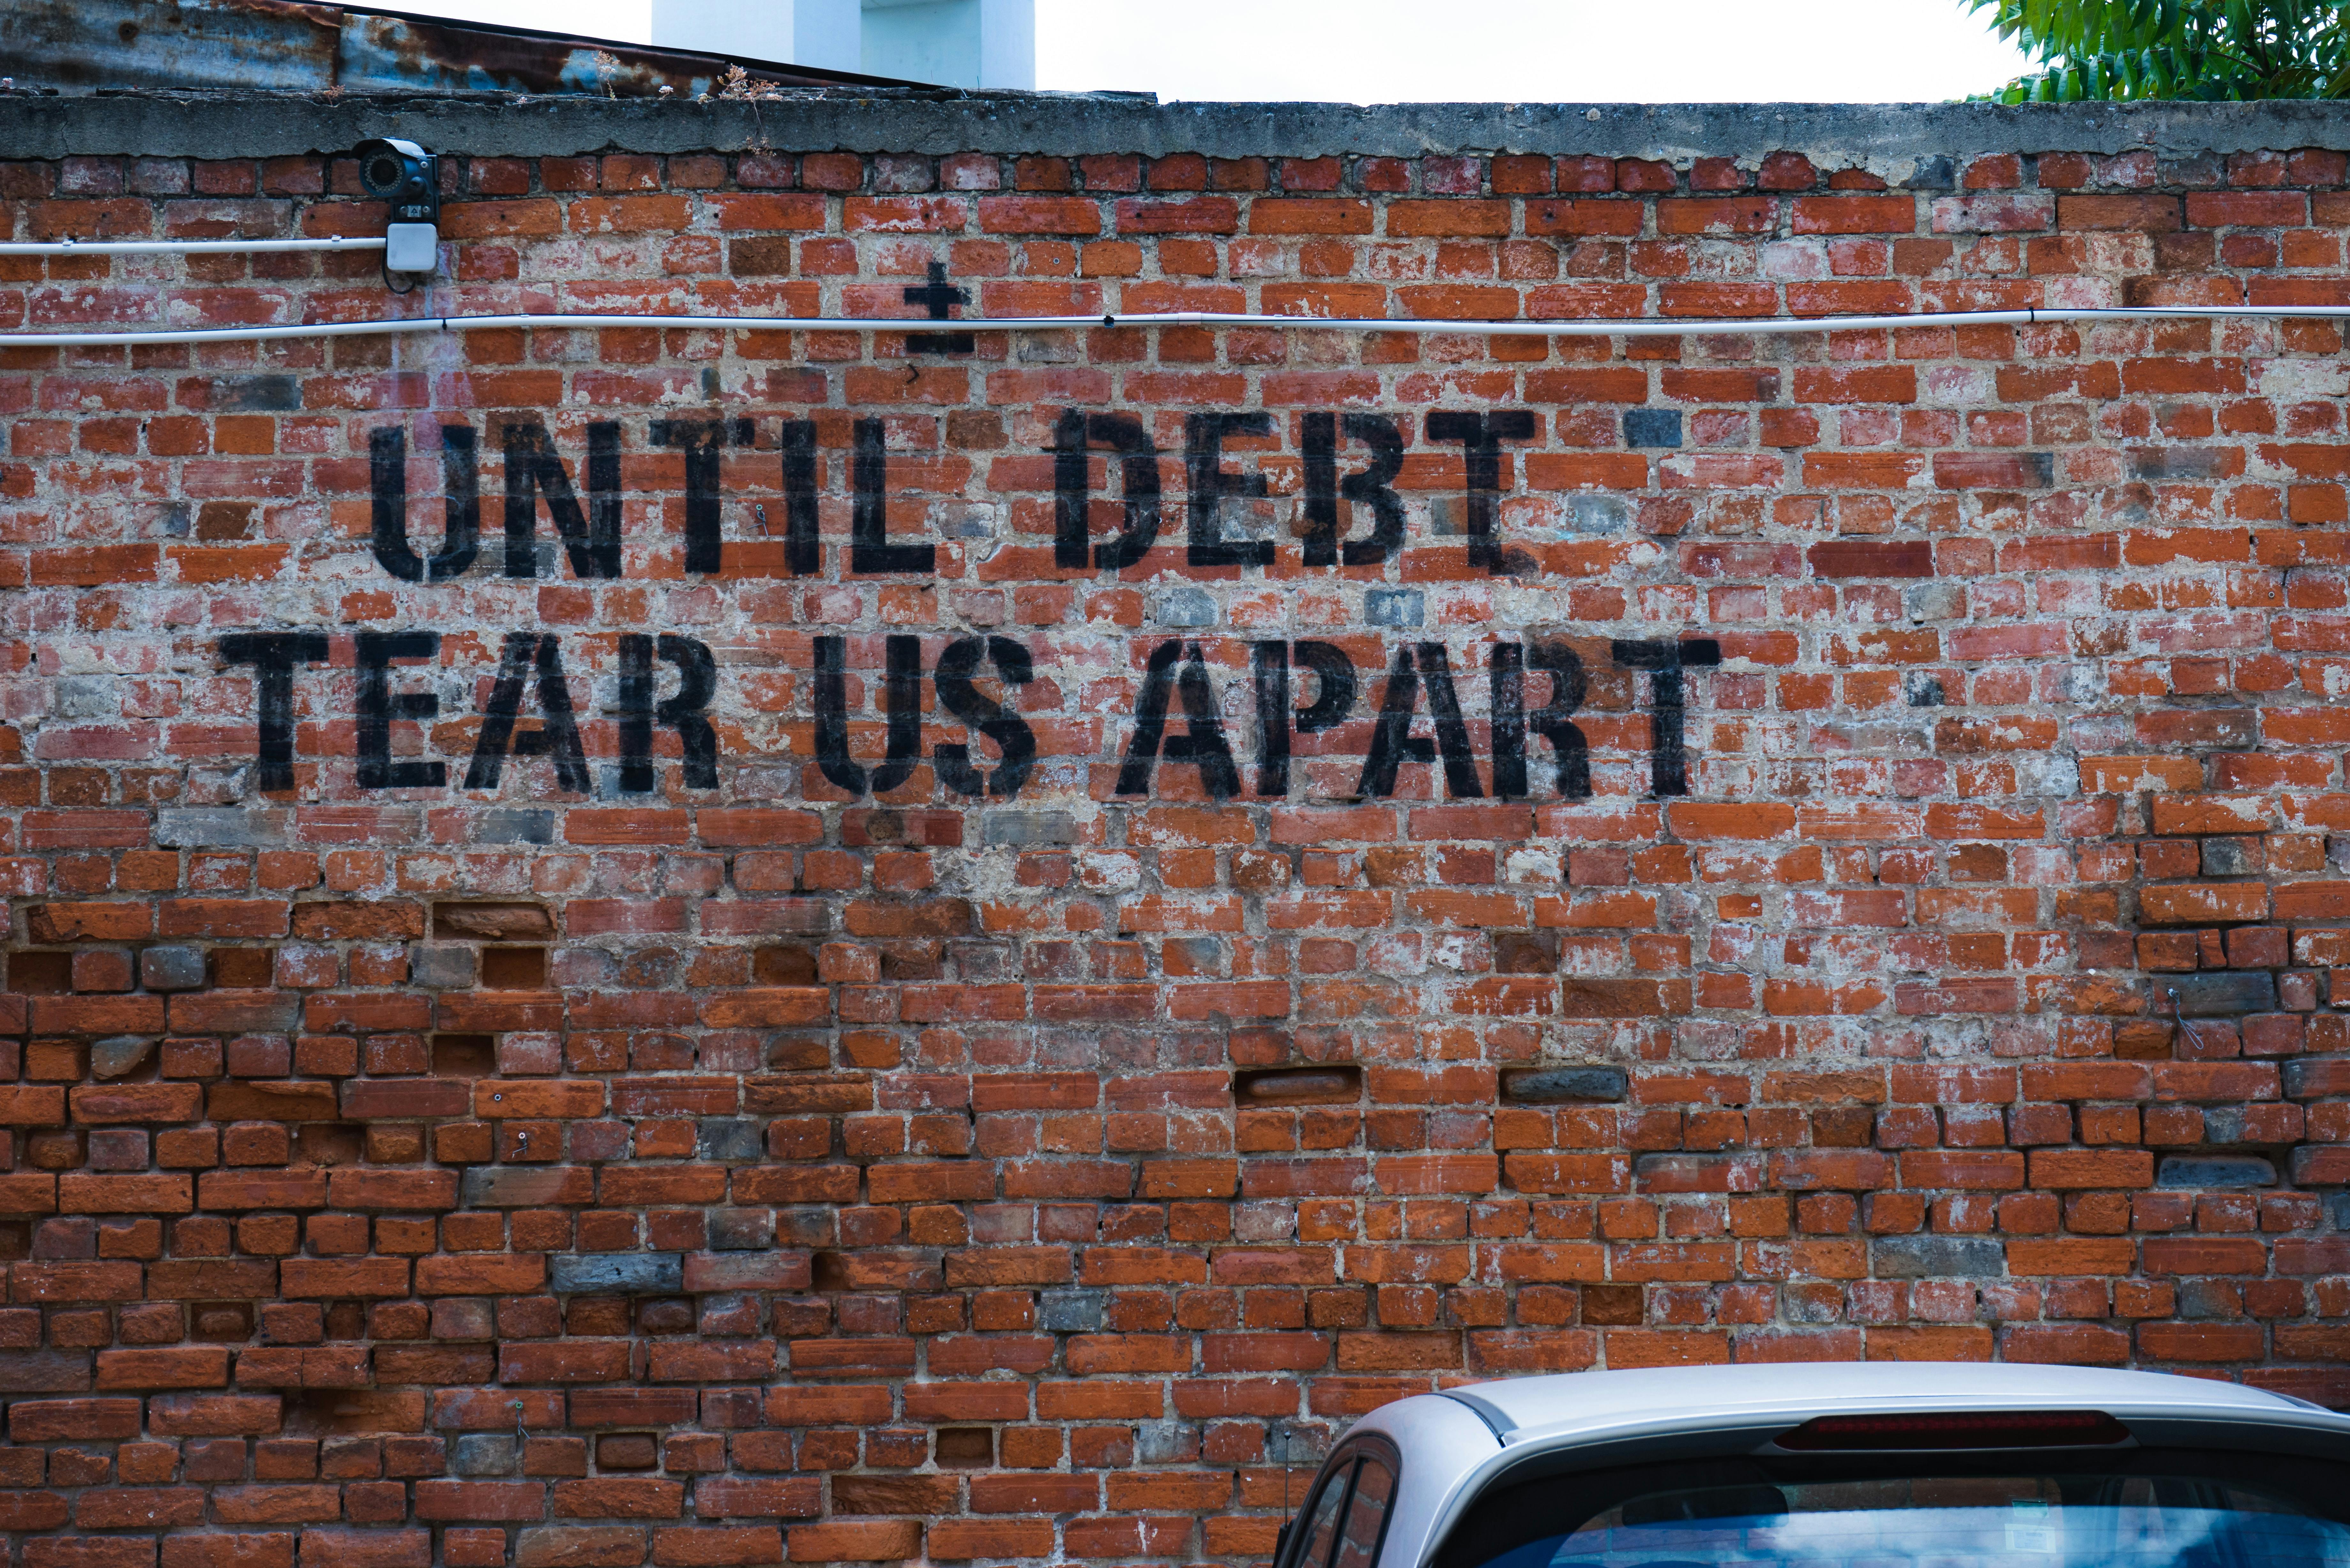 Graffiti on brick wall "UNTIL DEBT TEAR US APART"